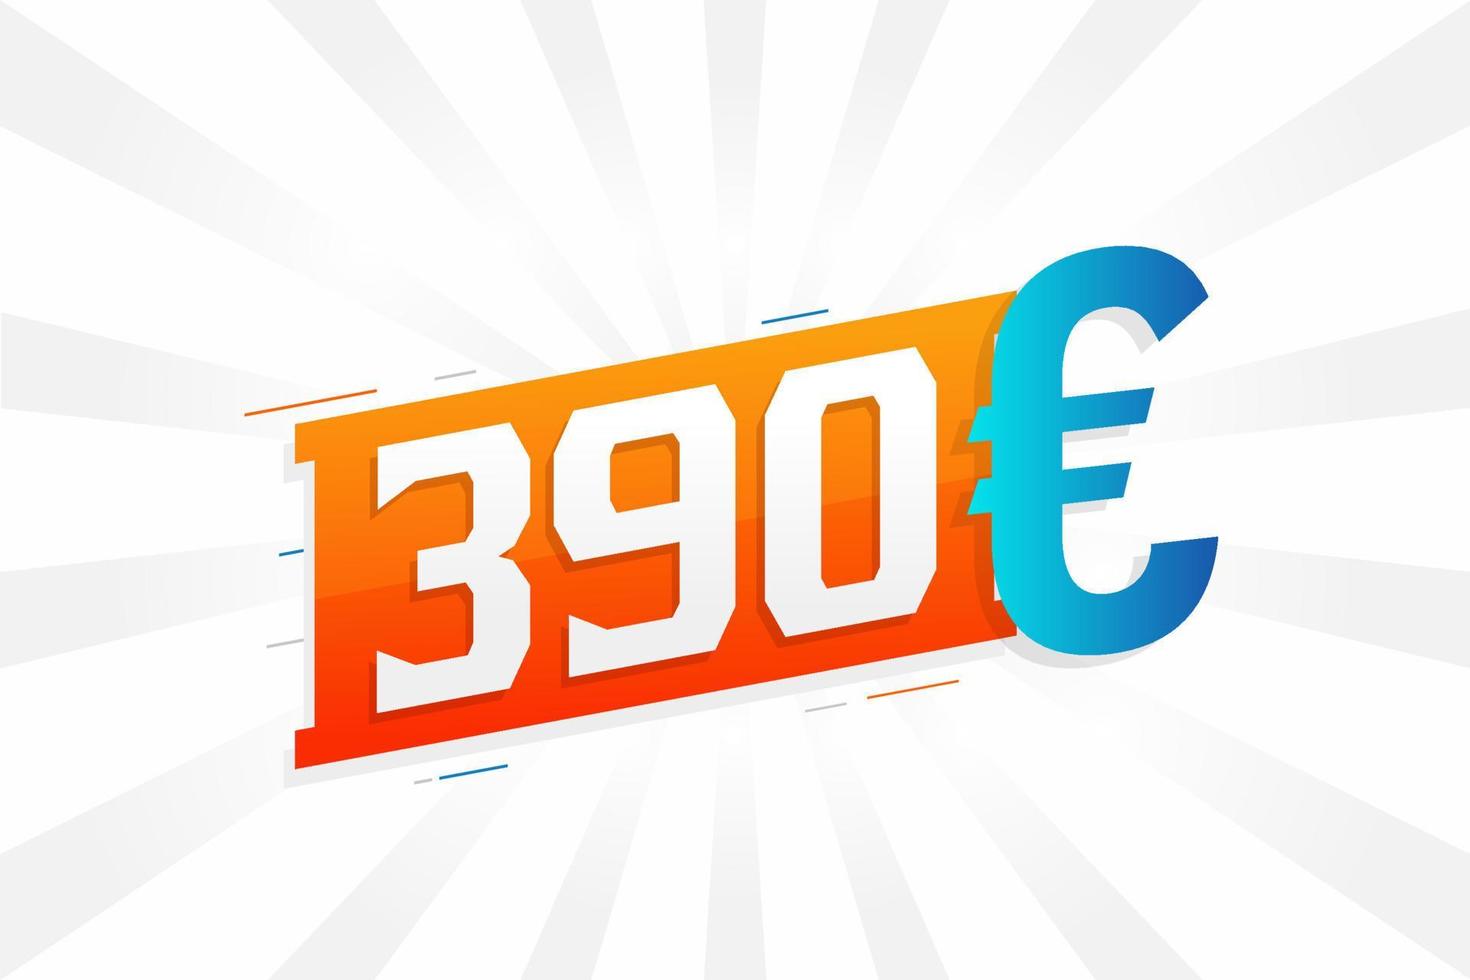 Símbolo de texto de vetor de moeda de 390 euros. vetor de estoque de dinheiro da união europeia de 390 euros